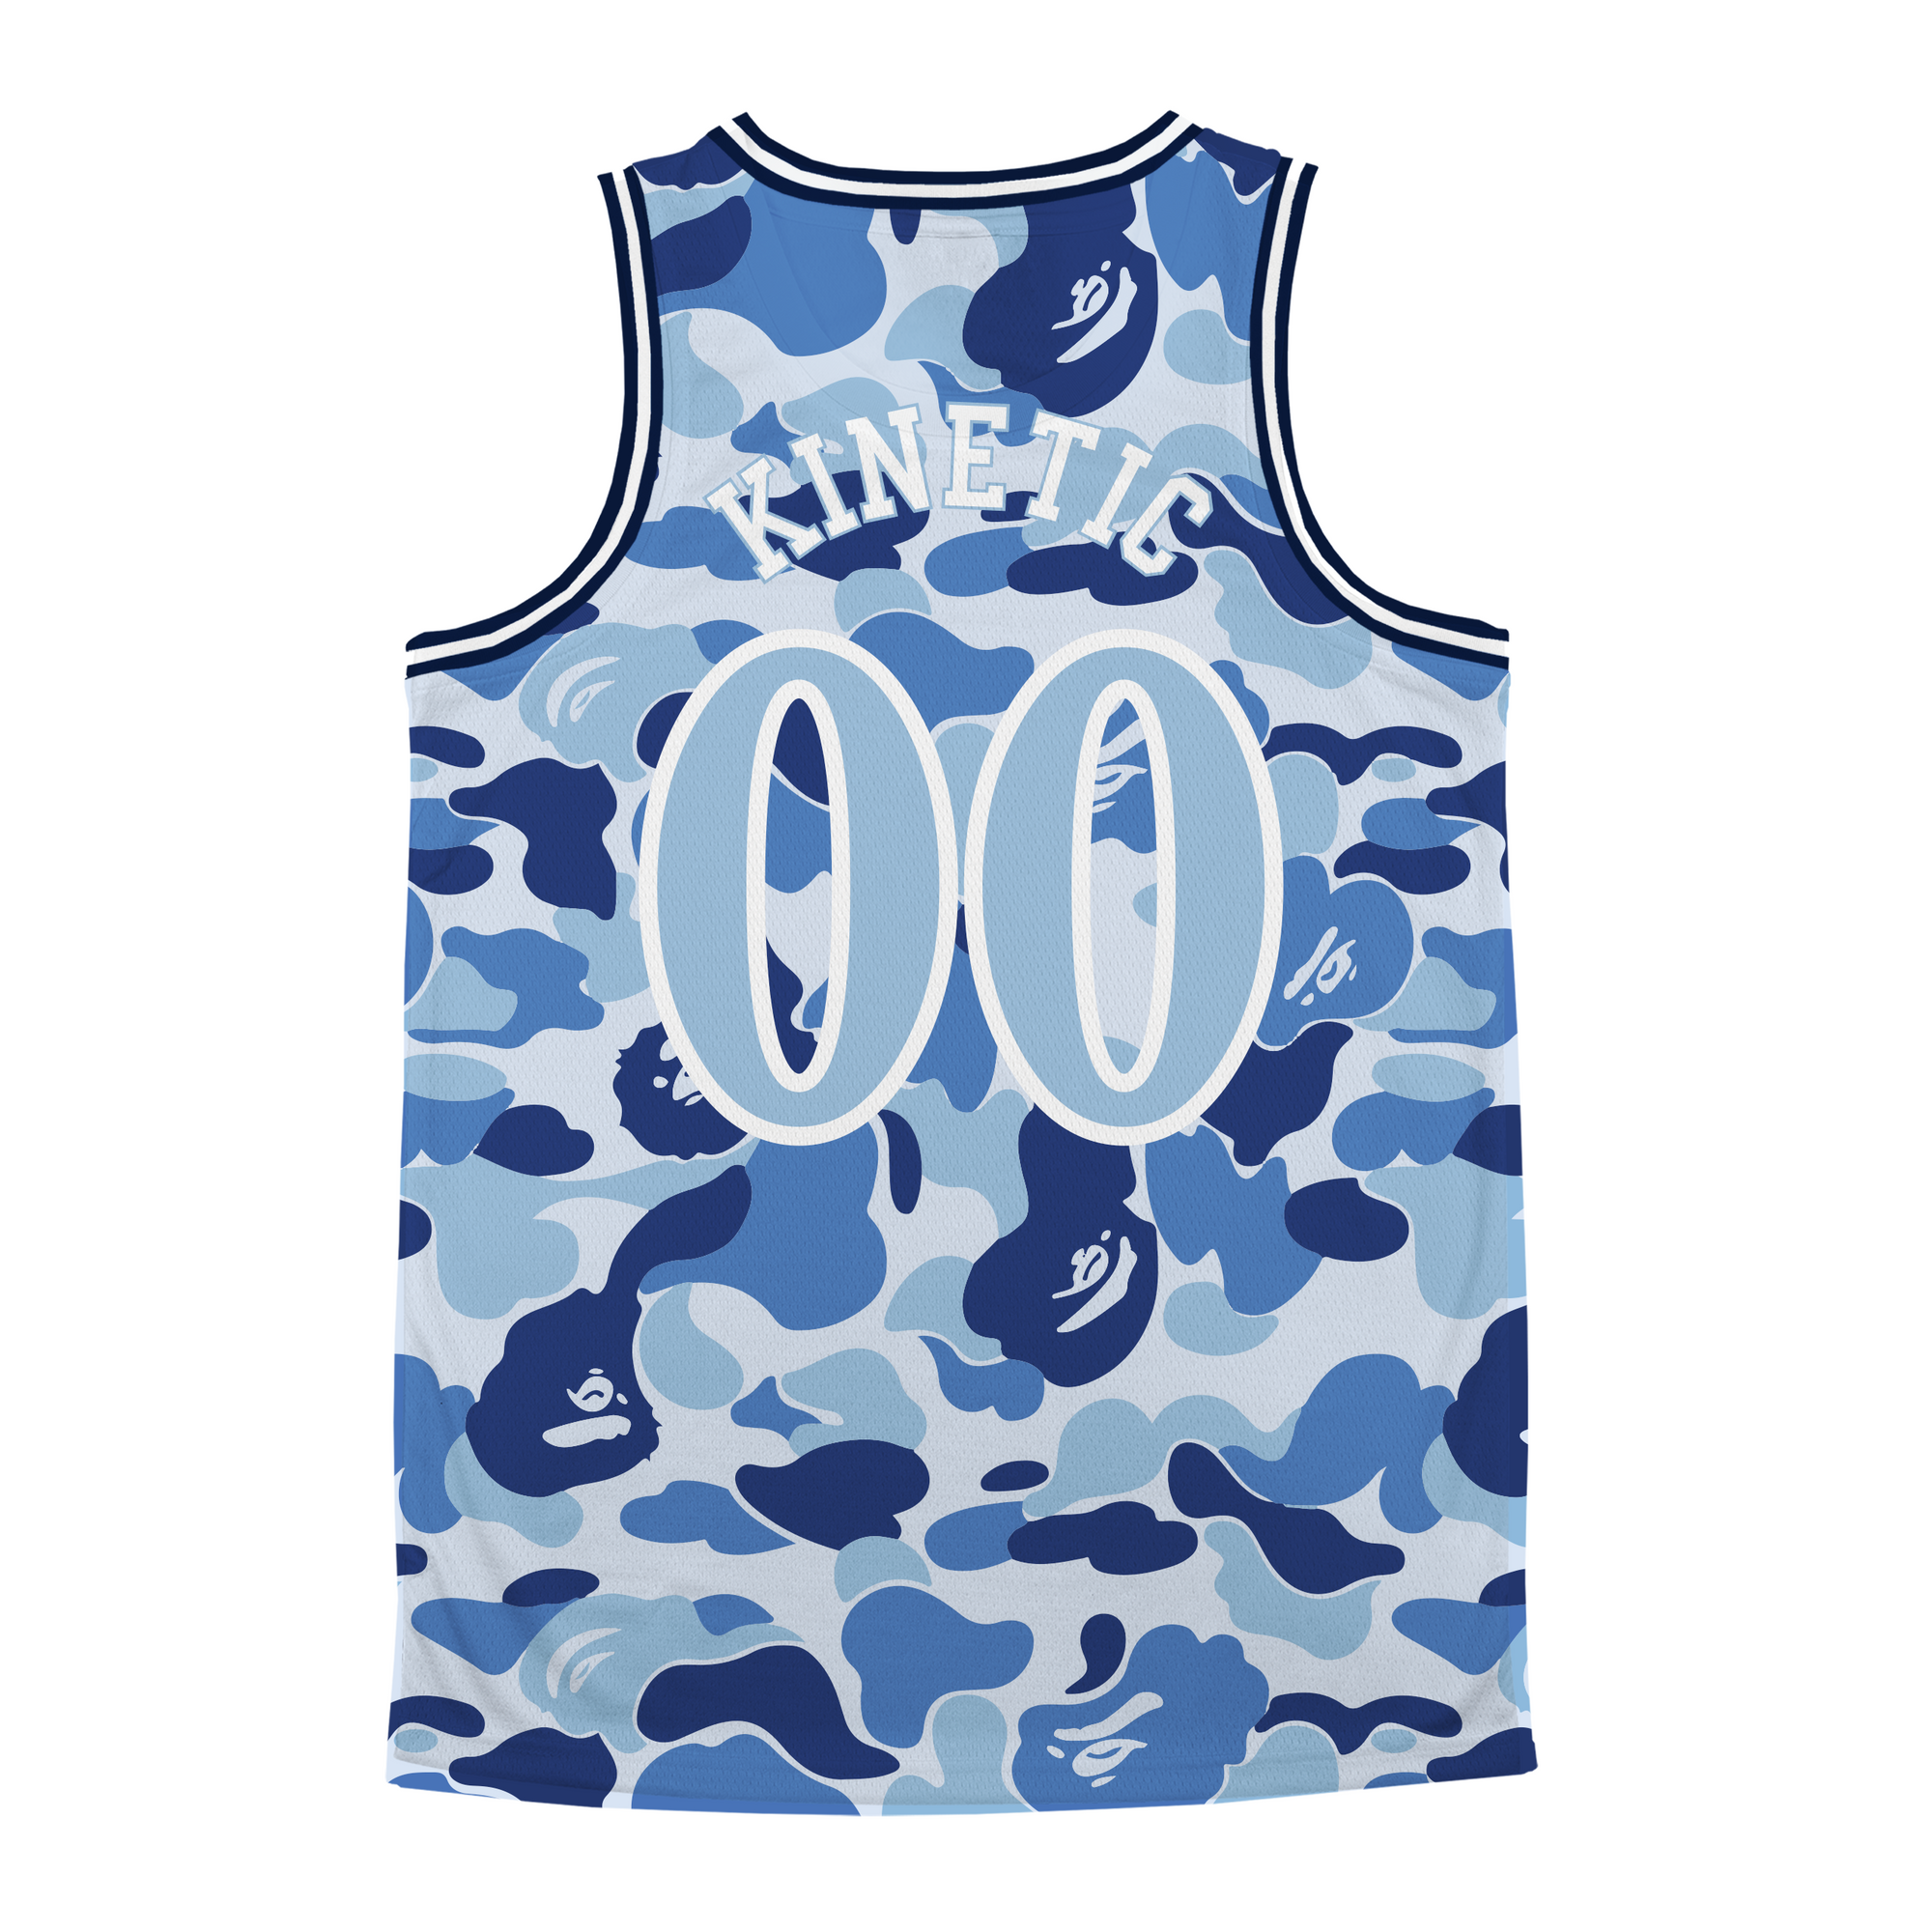 Alpha Kappa Lambda - Blue Camo Basketball Jersey